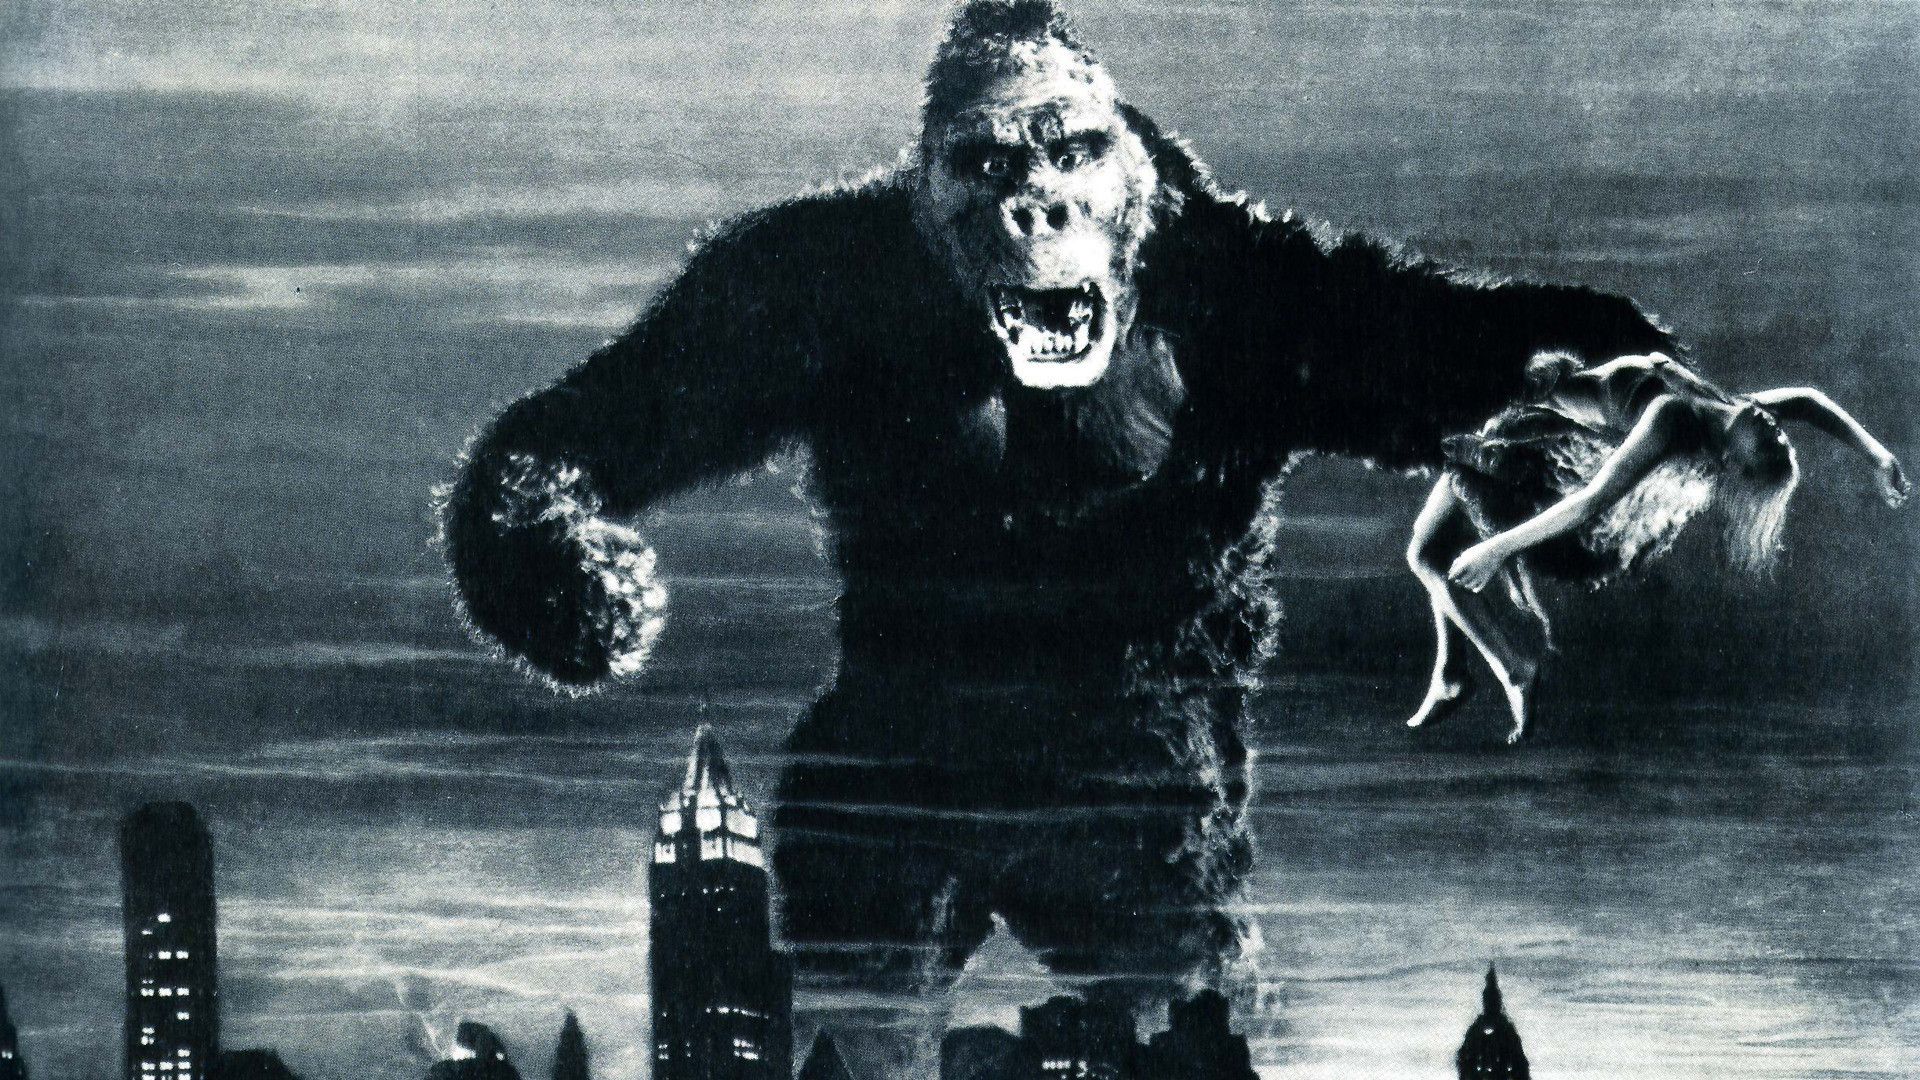 King Kong Godzilla vs. Kong Movie 4K Wallpaper #3.2283